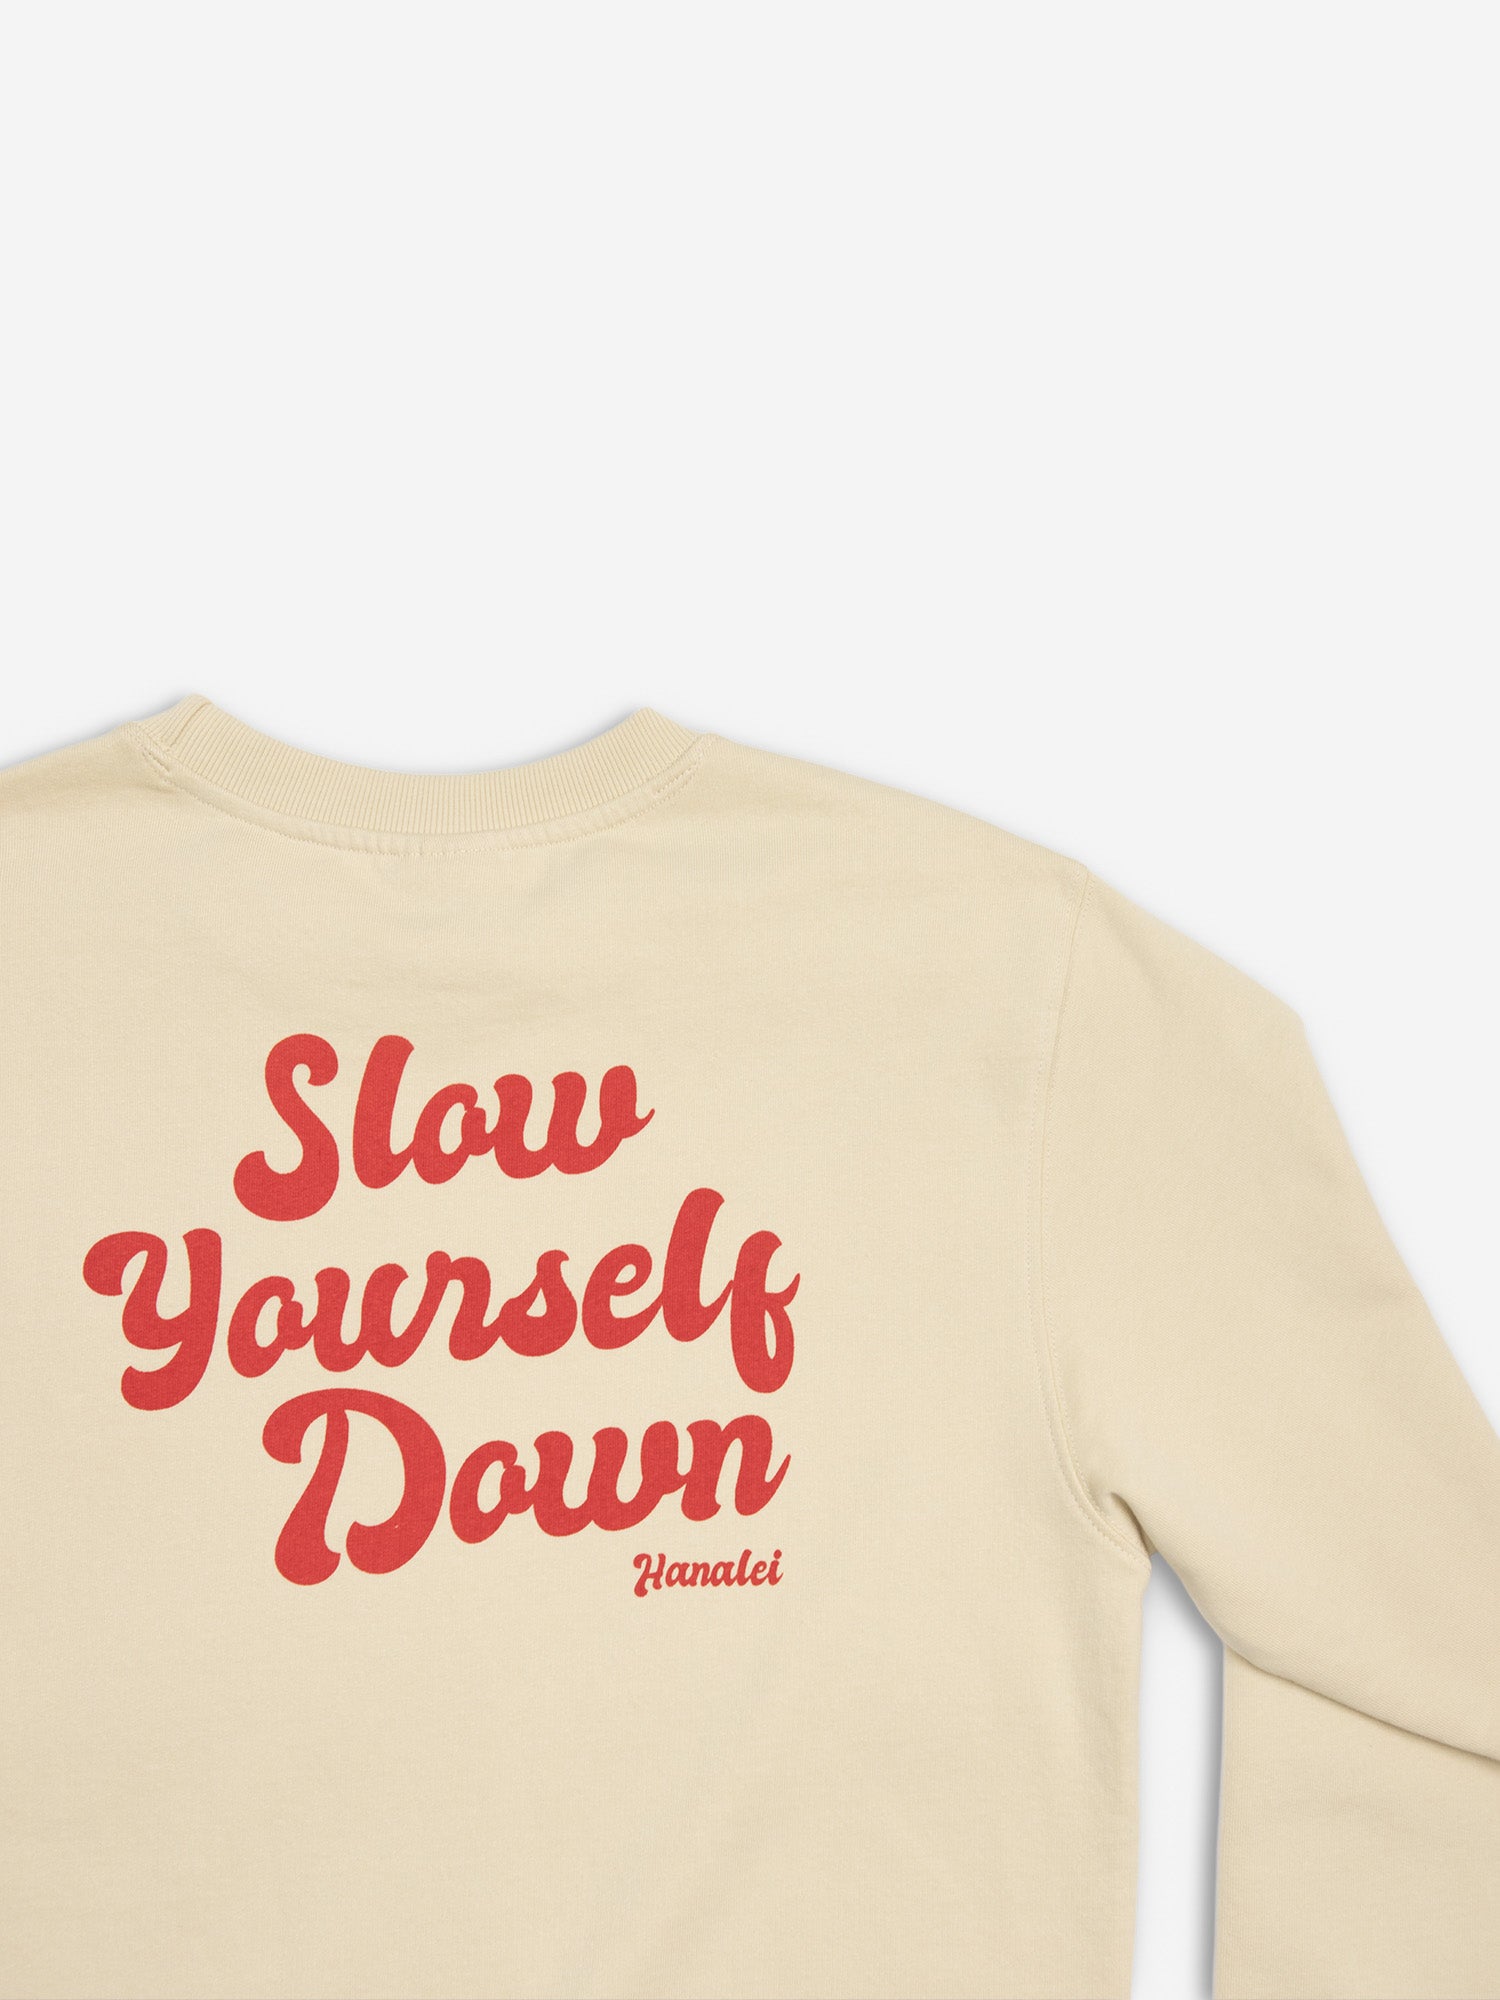 Retro Cream Crewneck Crewneck - Slow Yourself Down